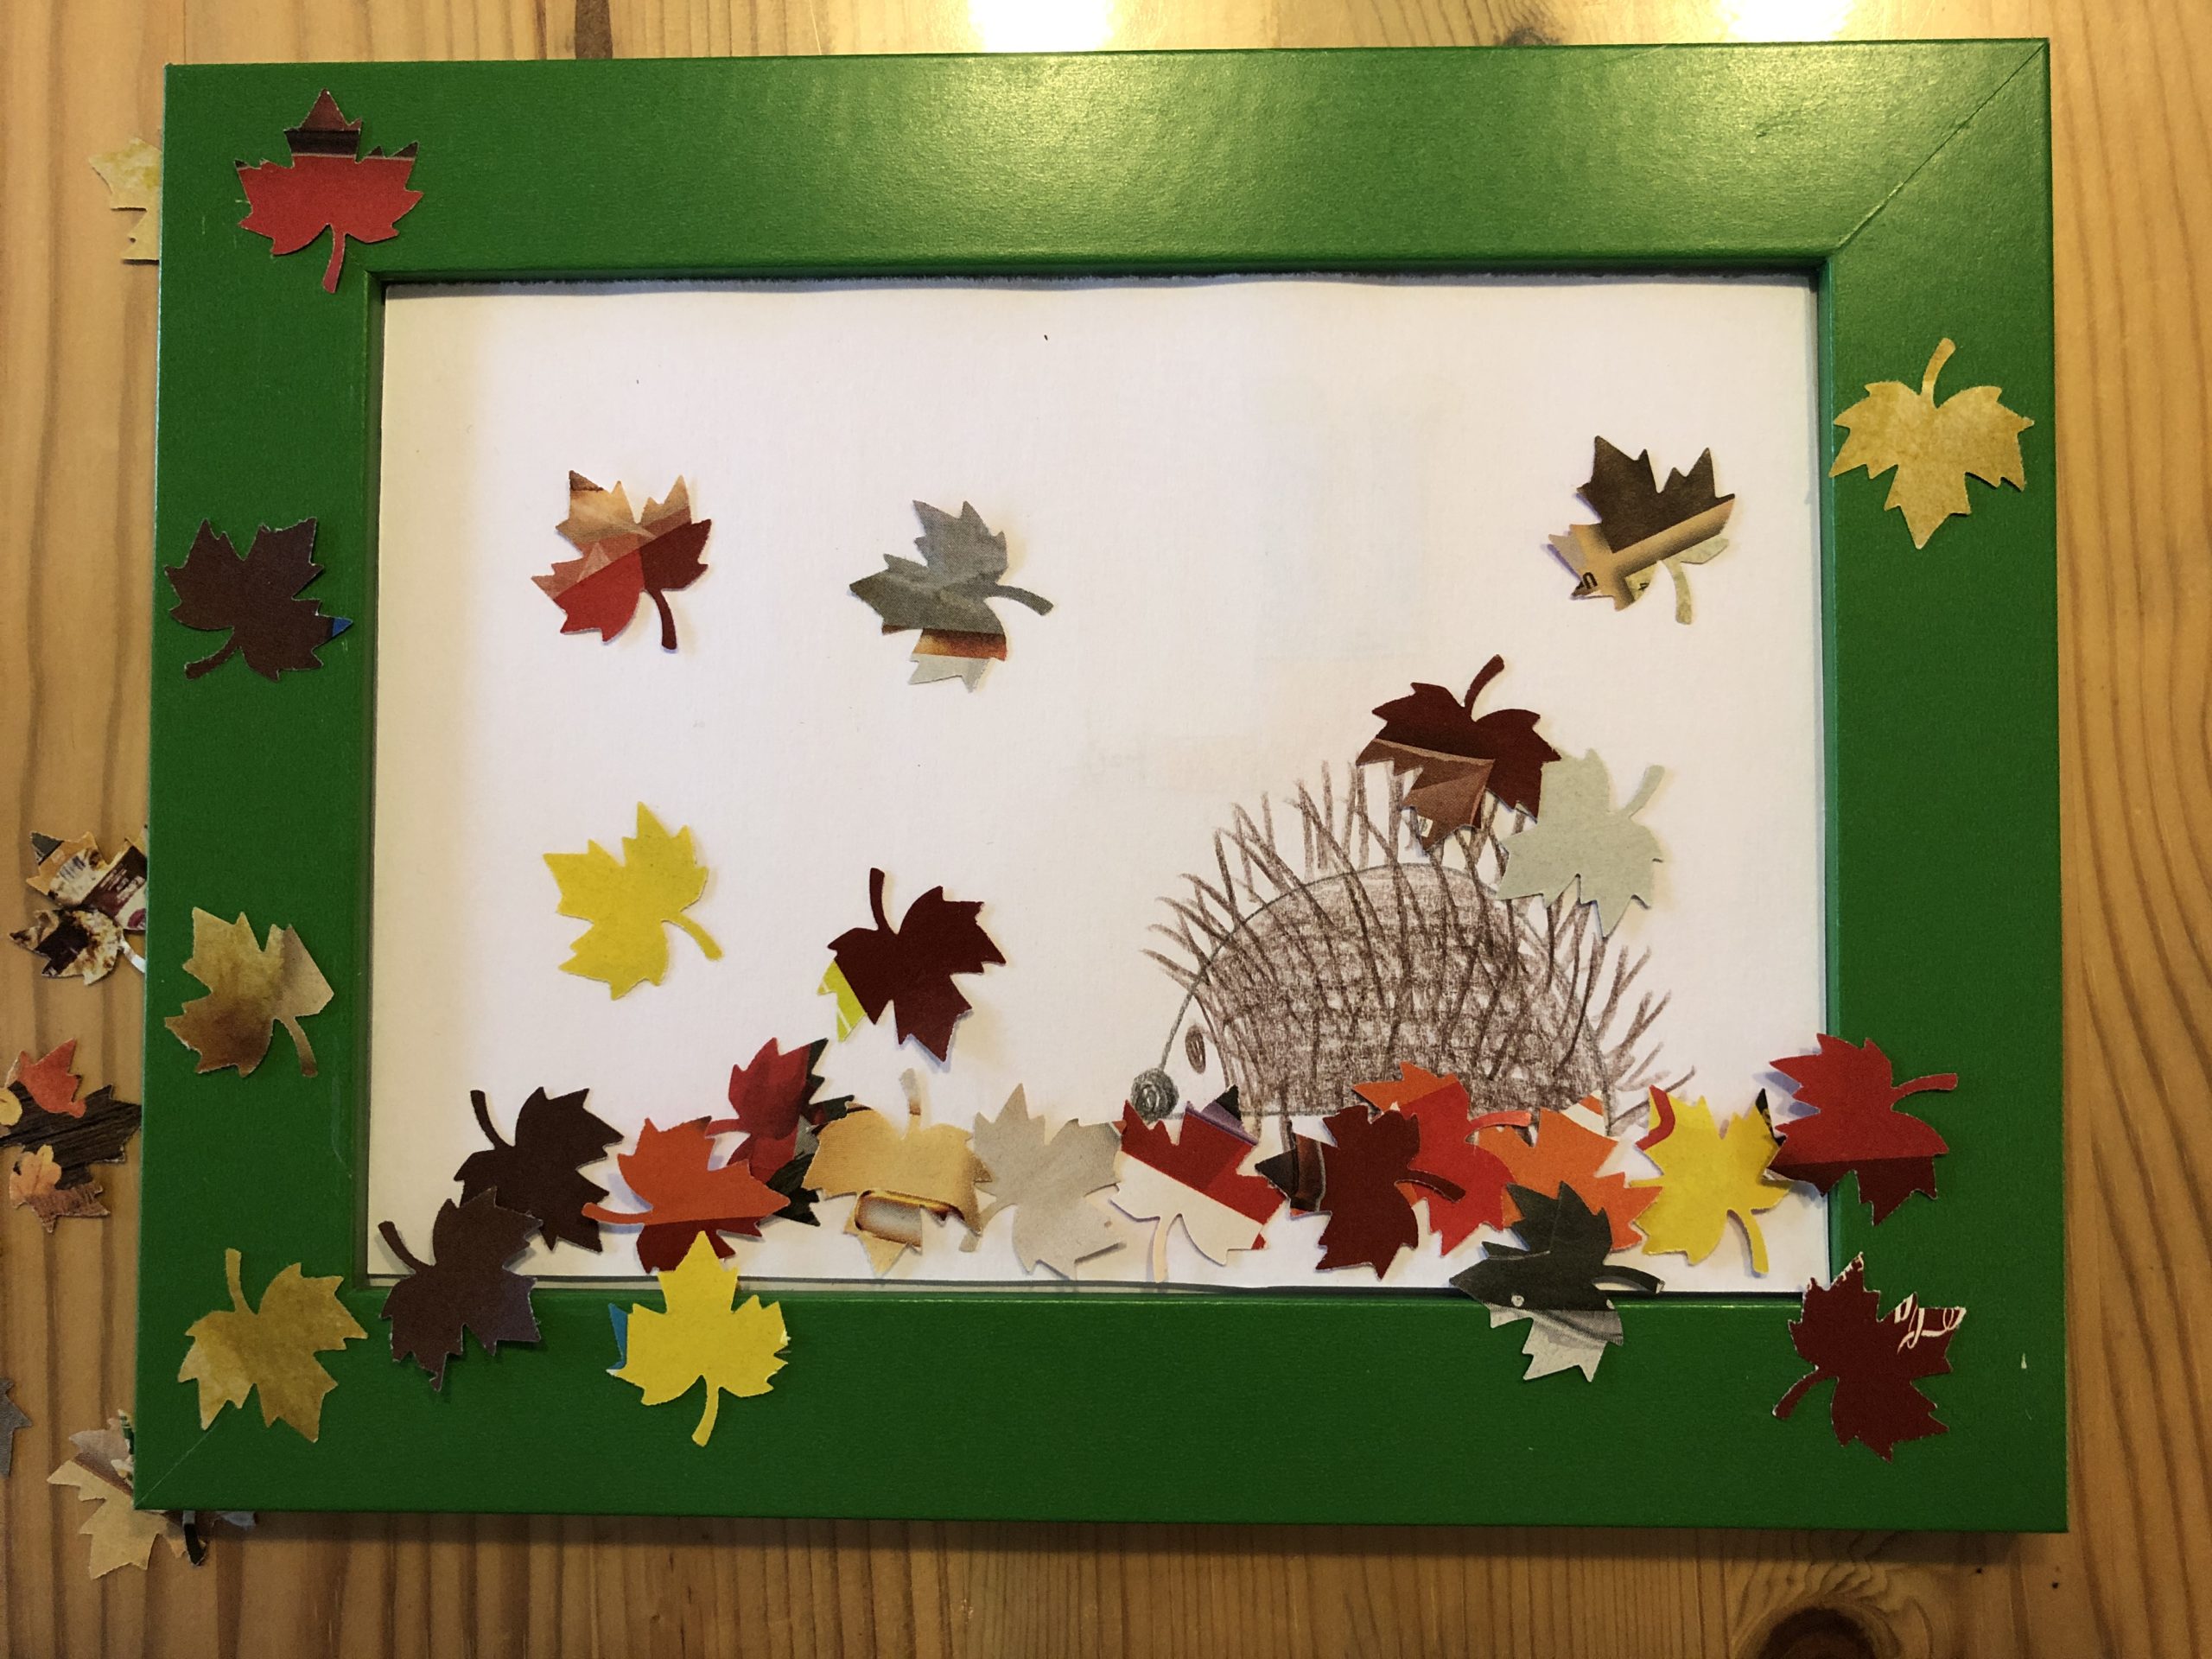 2. Bild zum Schritt 9 für das Bastel- und DIY-Abenteuer für Kinder: 'Jetzt klebt die Blätter um den Igel herum. Klebt einen...'